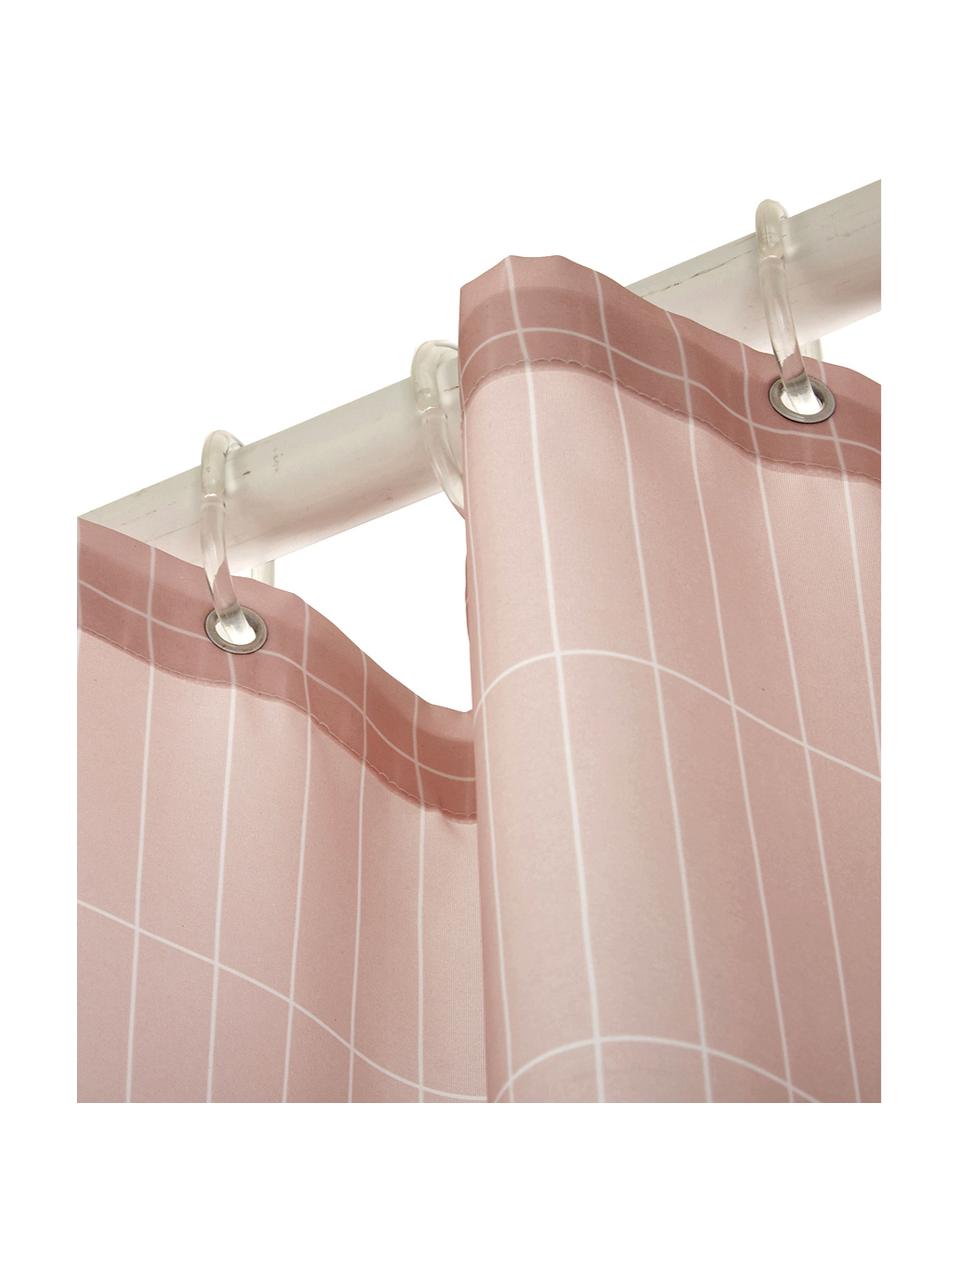 Zasłona prysznicowa Tiles, Blady różowy, S 180 x D 200 cm